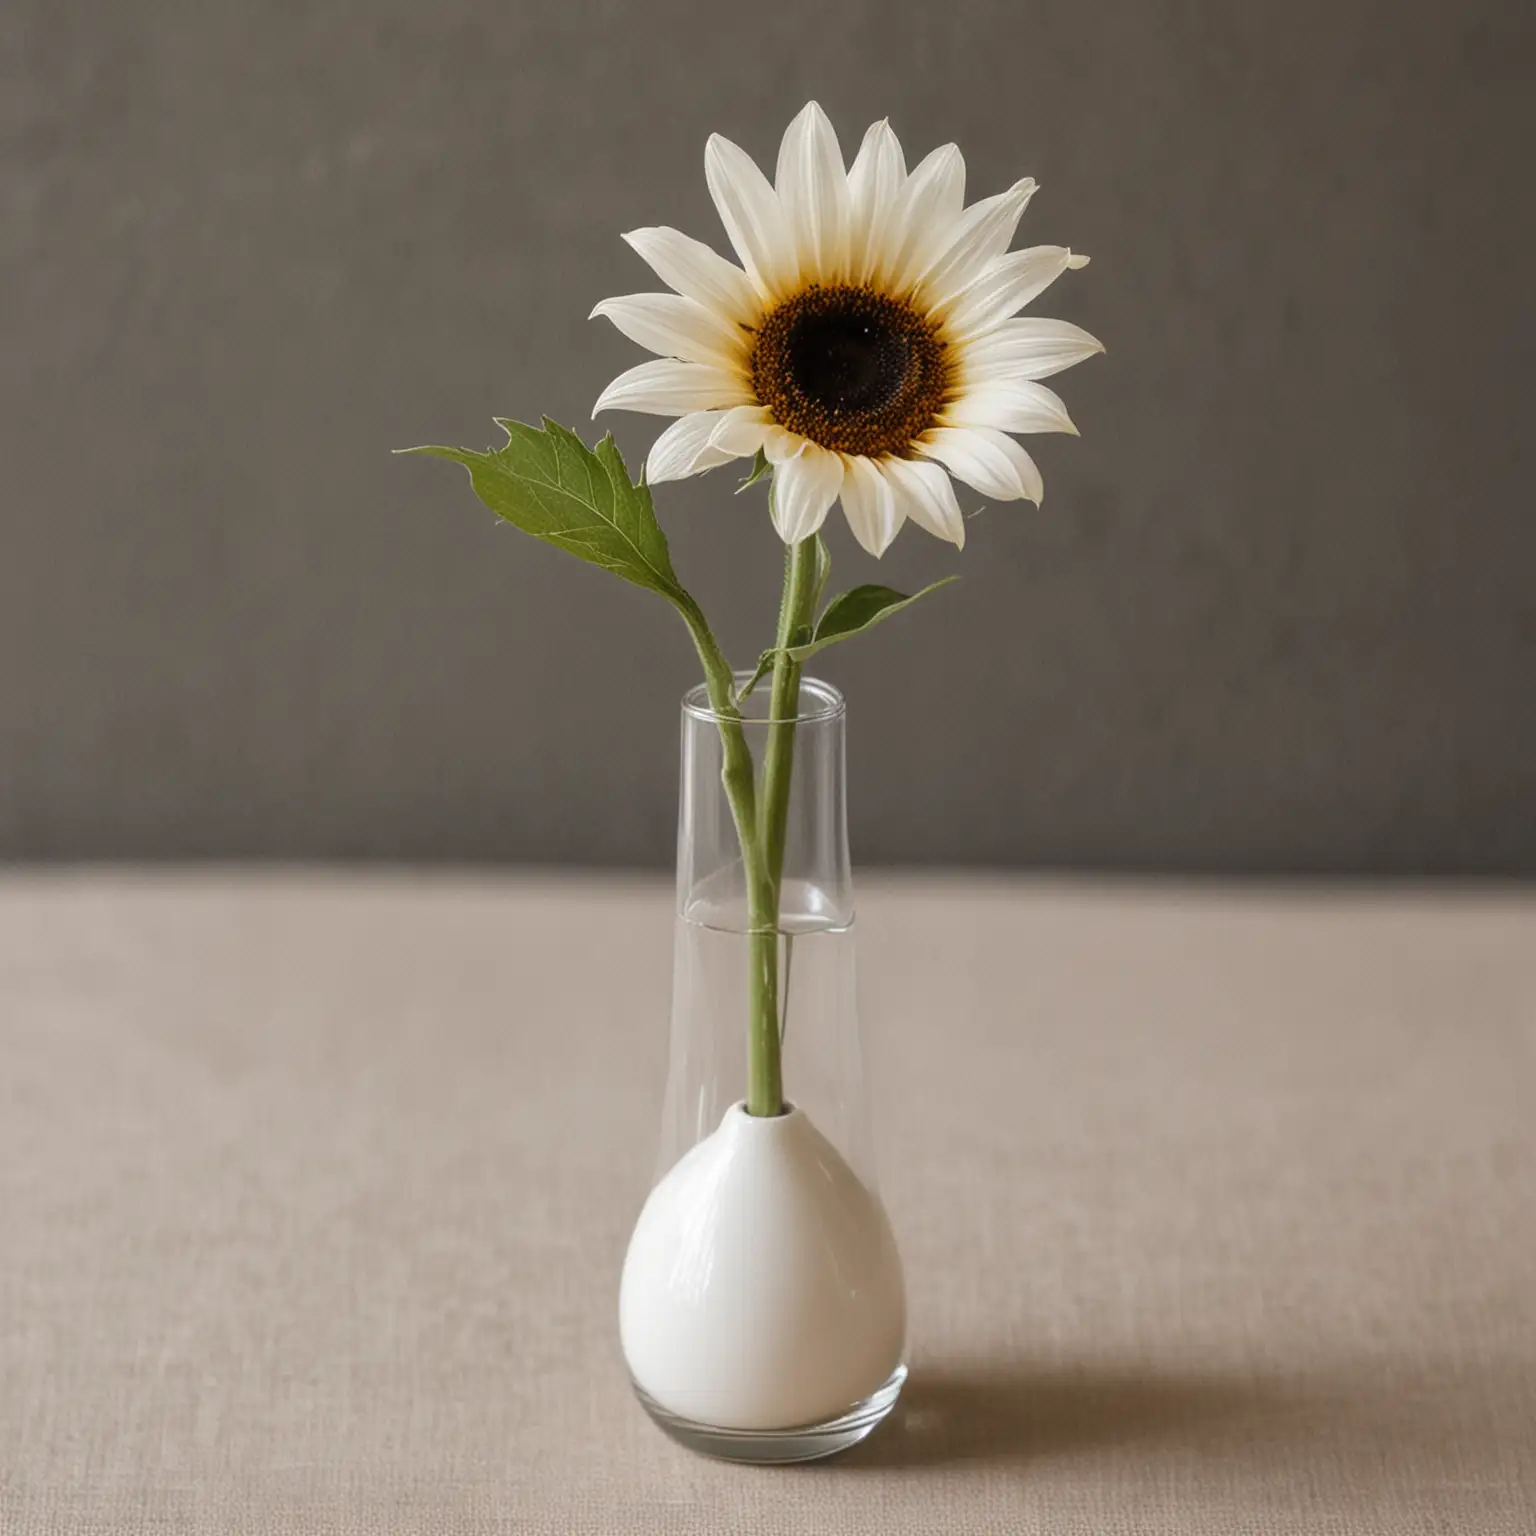 Minimalist-Wedding-Centerpiece-Single-Sunflower-in-White-Bud-Vase